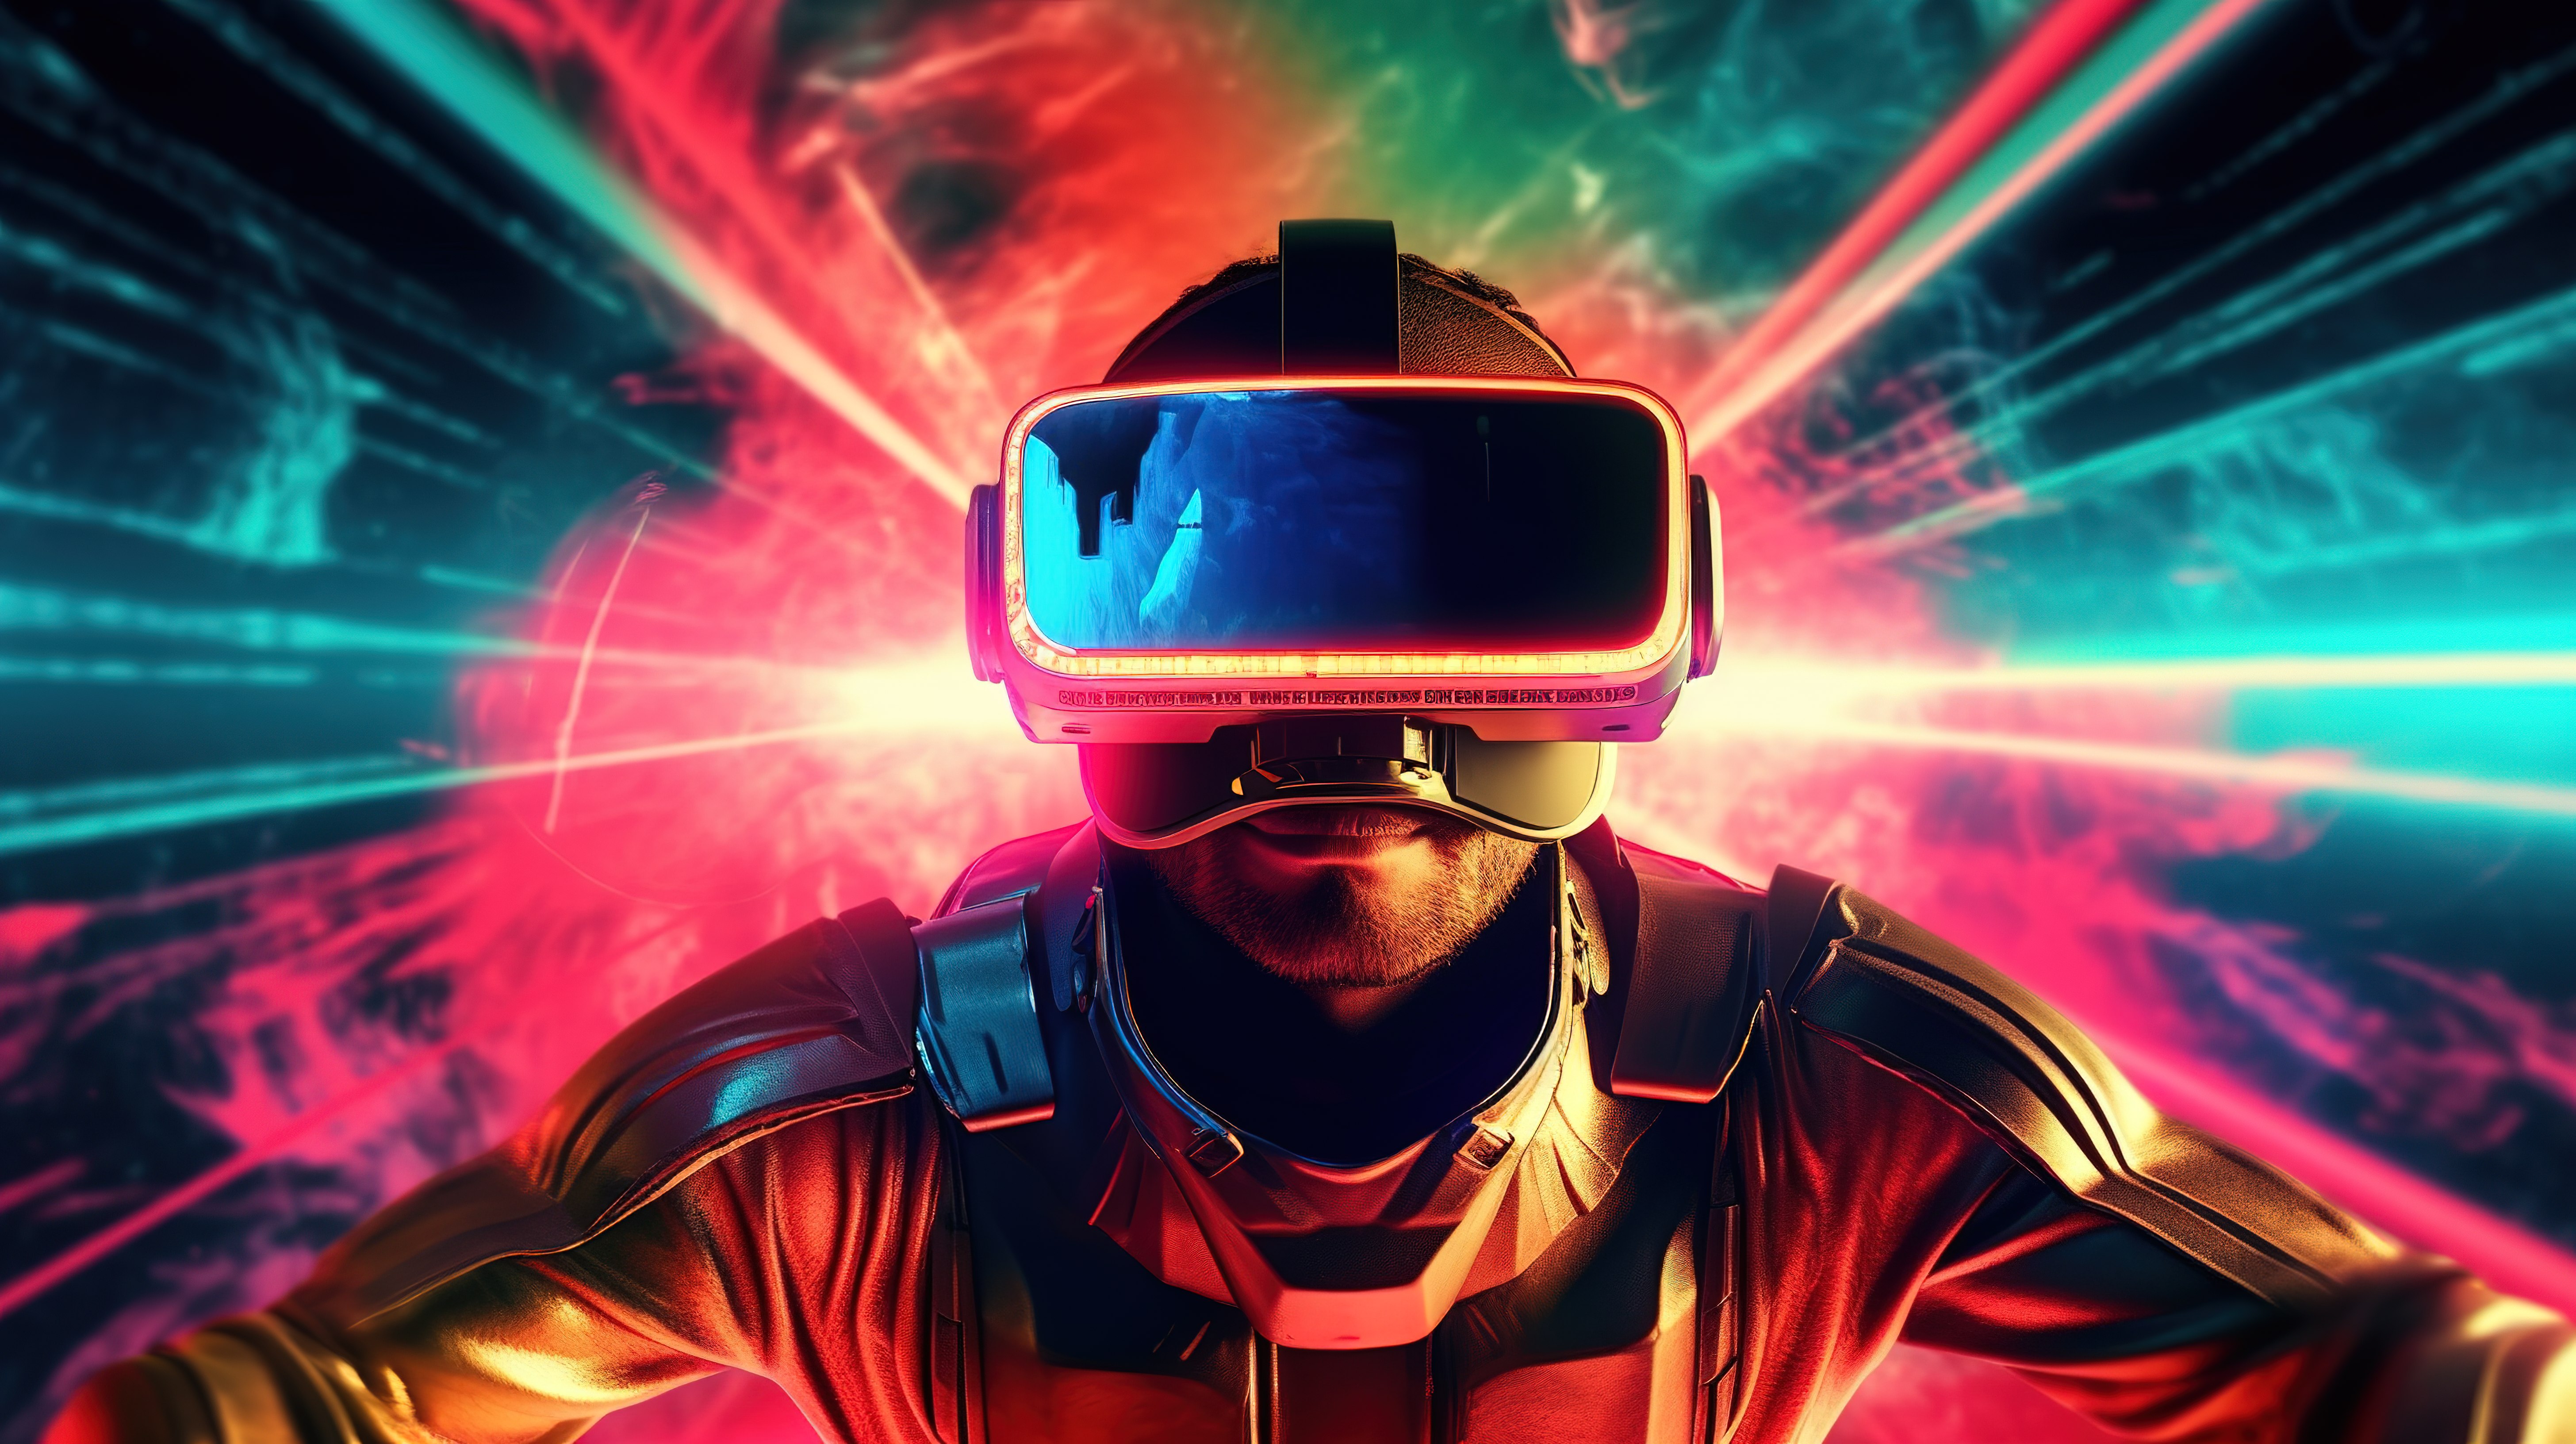 体验沉浸式娱乐游戏电影观看和 VR 眼镜带来的迷人 3D 体验图片